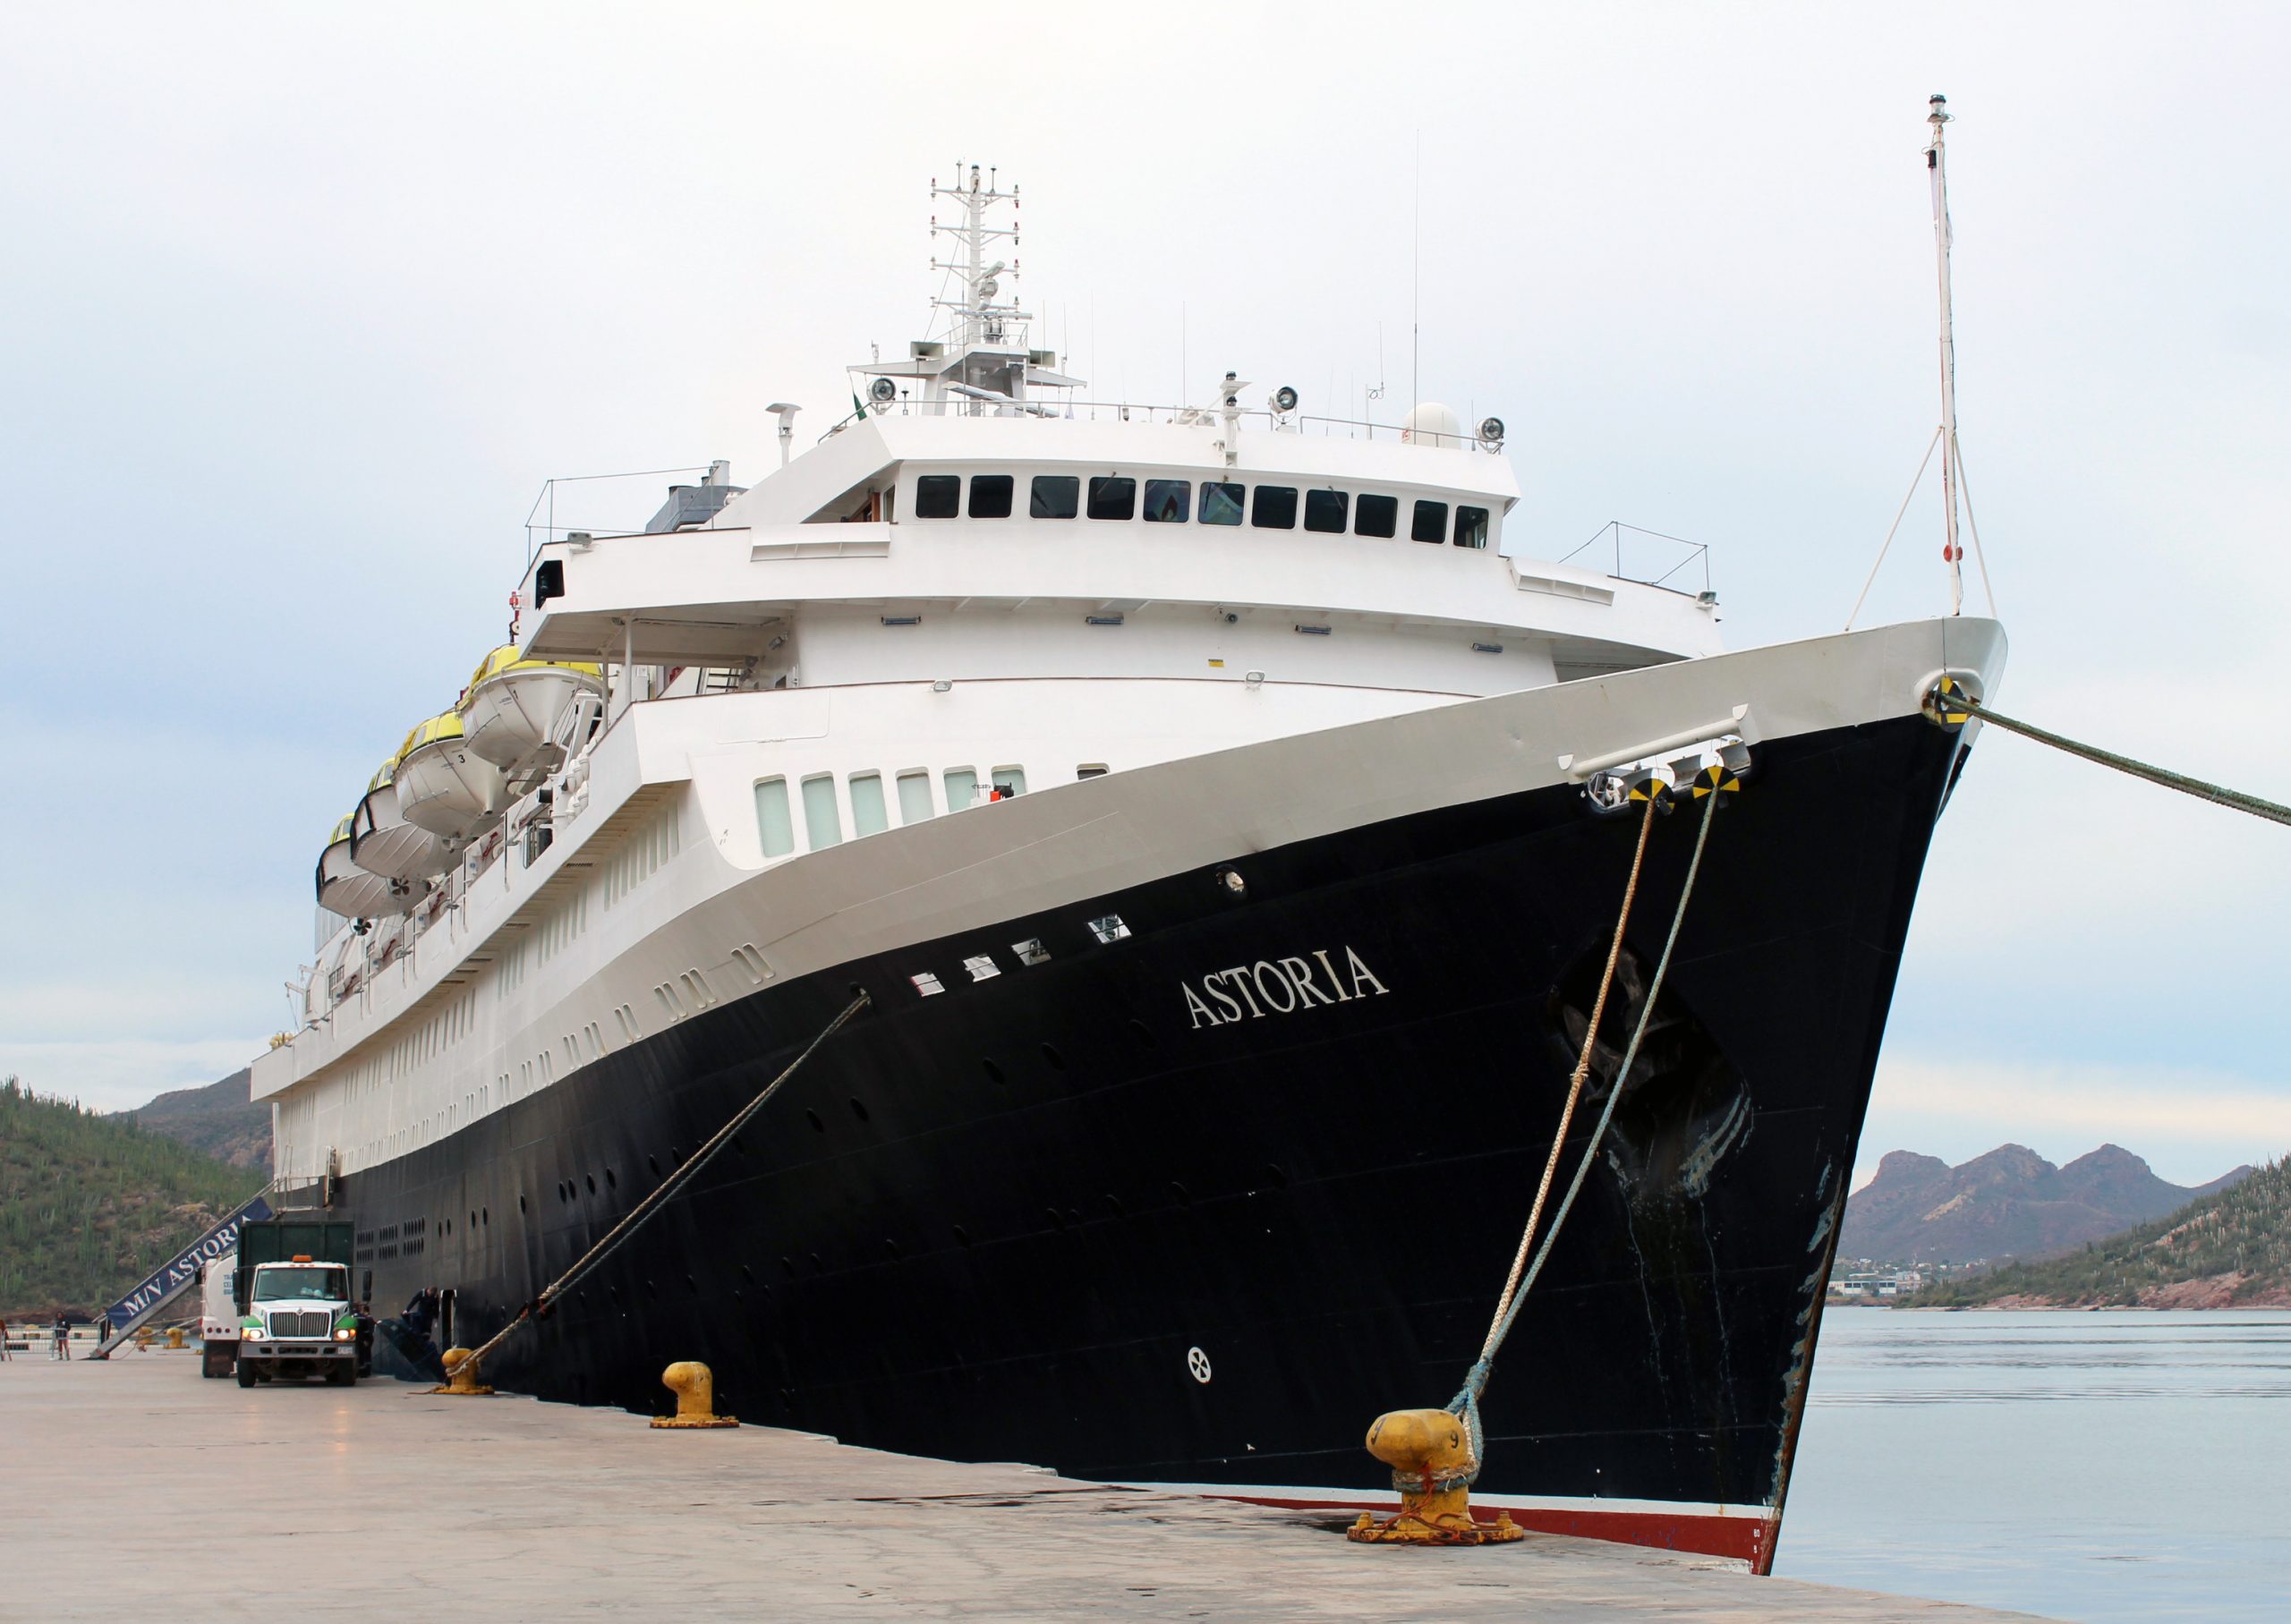 Cabildean la llegada de más cruceros al Mar de Cortés